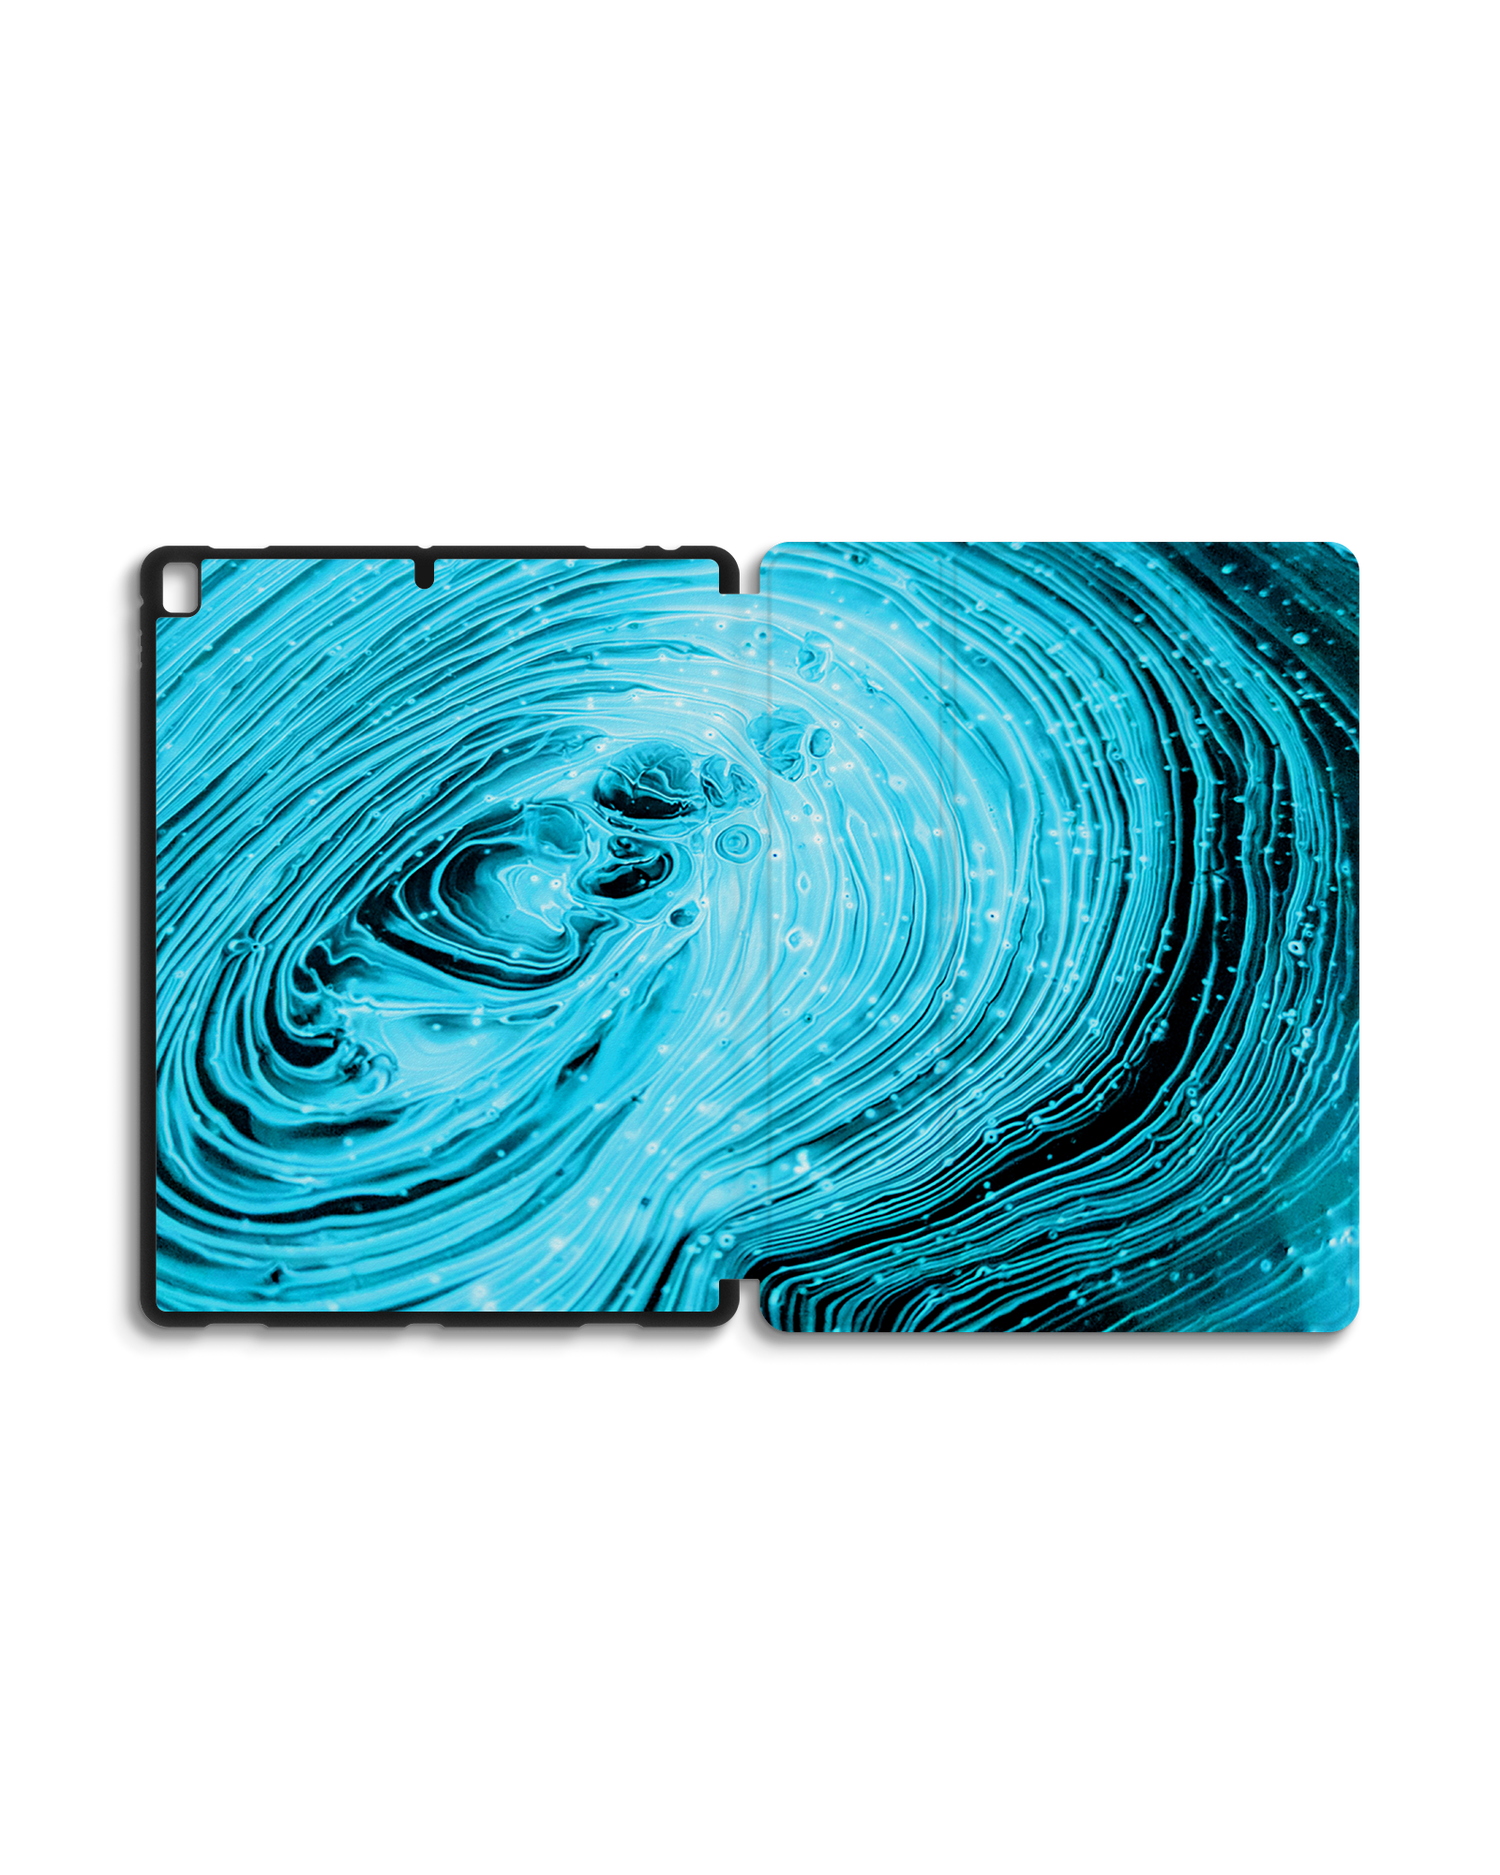 Turquoise Ripples iPad Hülle mit Stifthalter für Apple iPad Pro 2 12.9'' (2017): Geöffnet Außenansicht